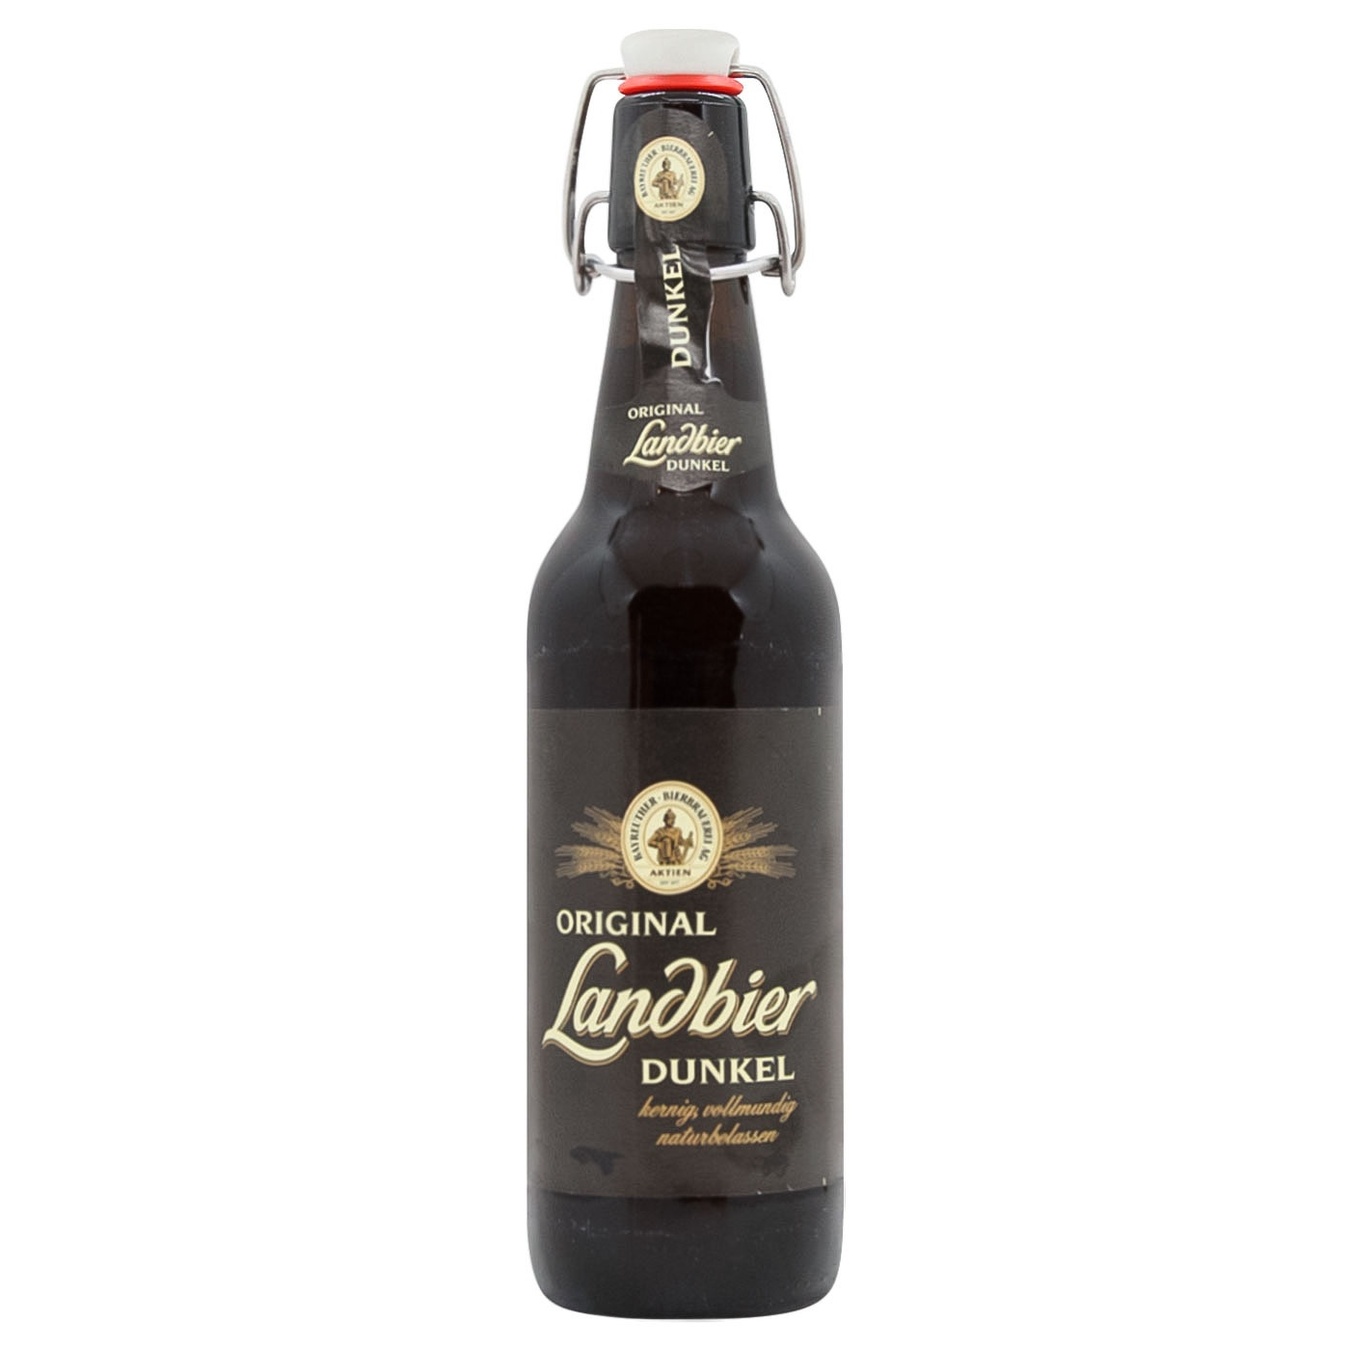 Dark beer Landbier Dunkel 5.3% 0.5l glass